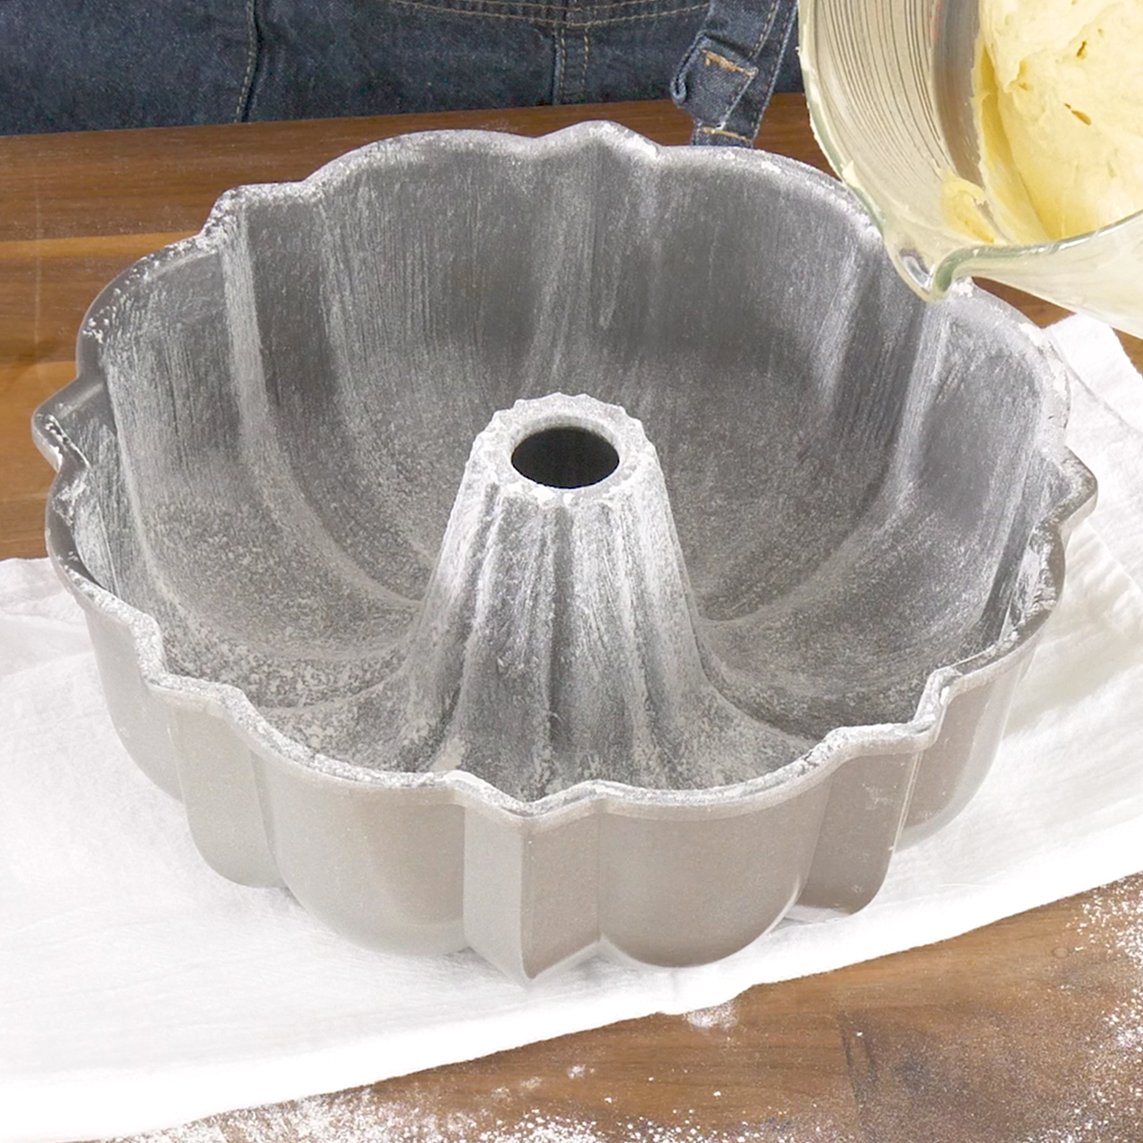 Baking Pans - Prepare or Preparing for Baking | CraftyBaking | Formerly  Baking911